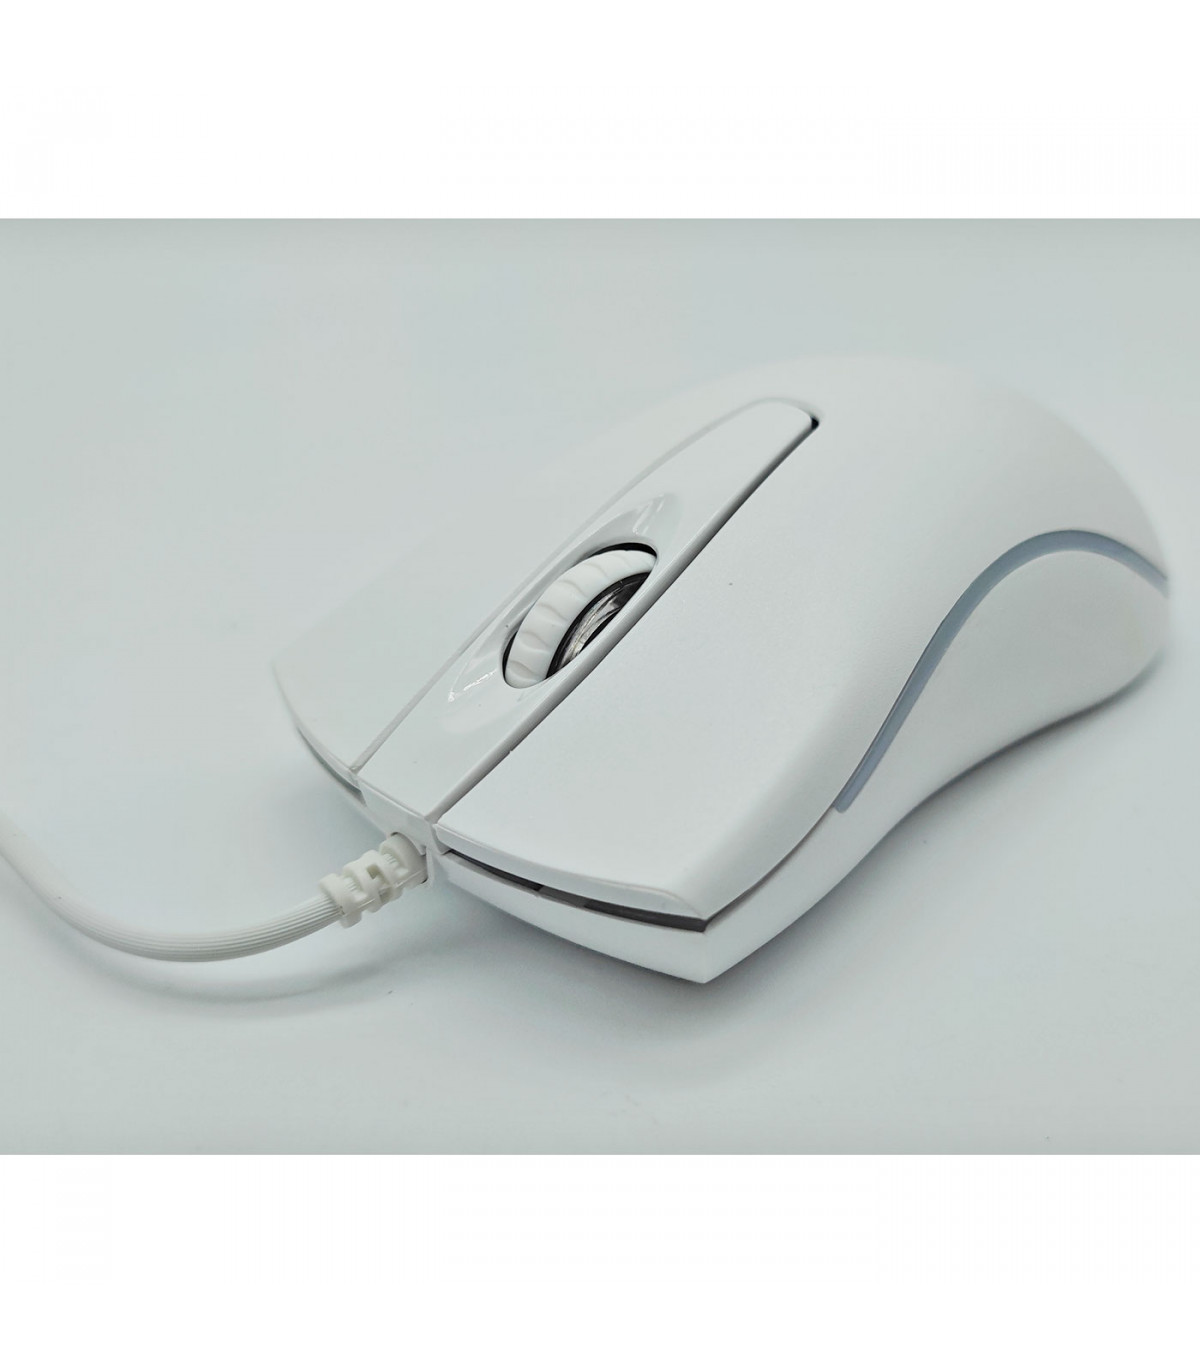 Raton Optico USB con Cable Mouse Gaming Ergonomico para Ordenador